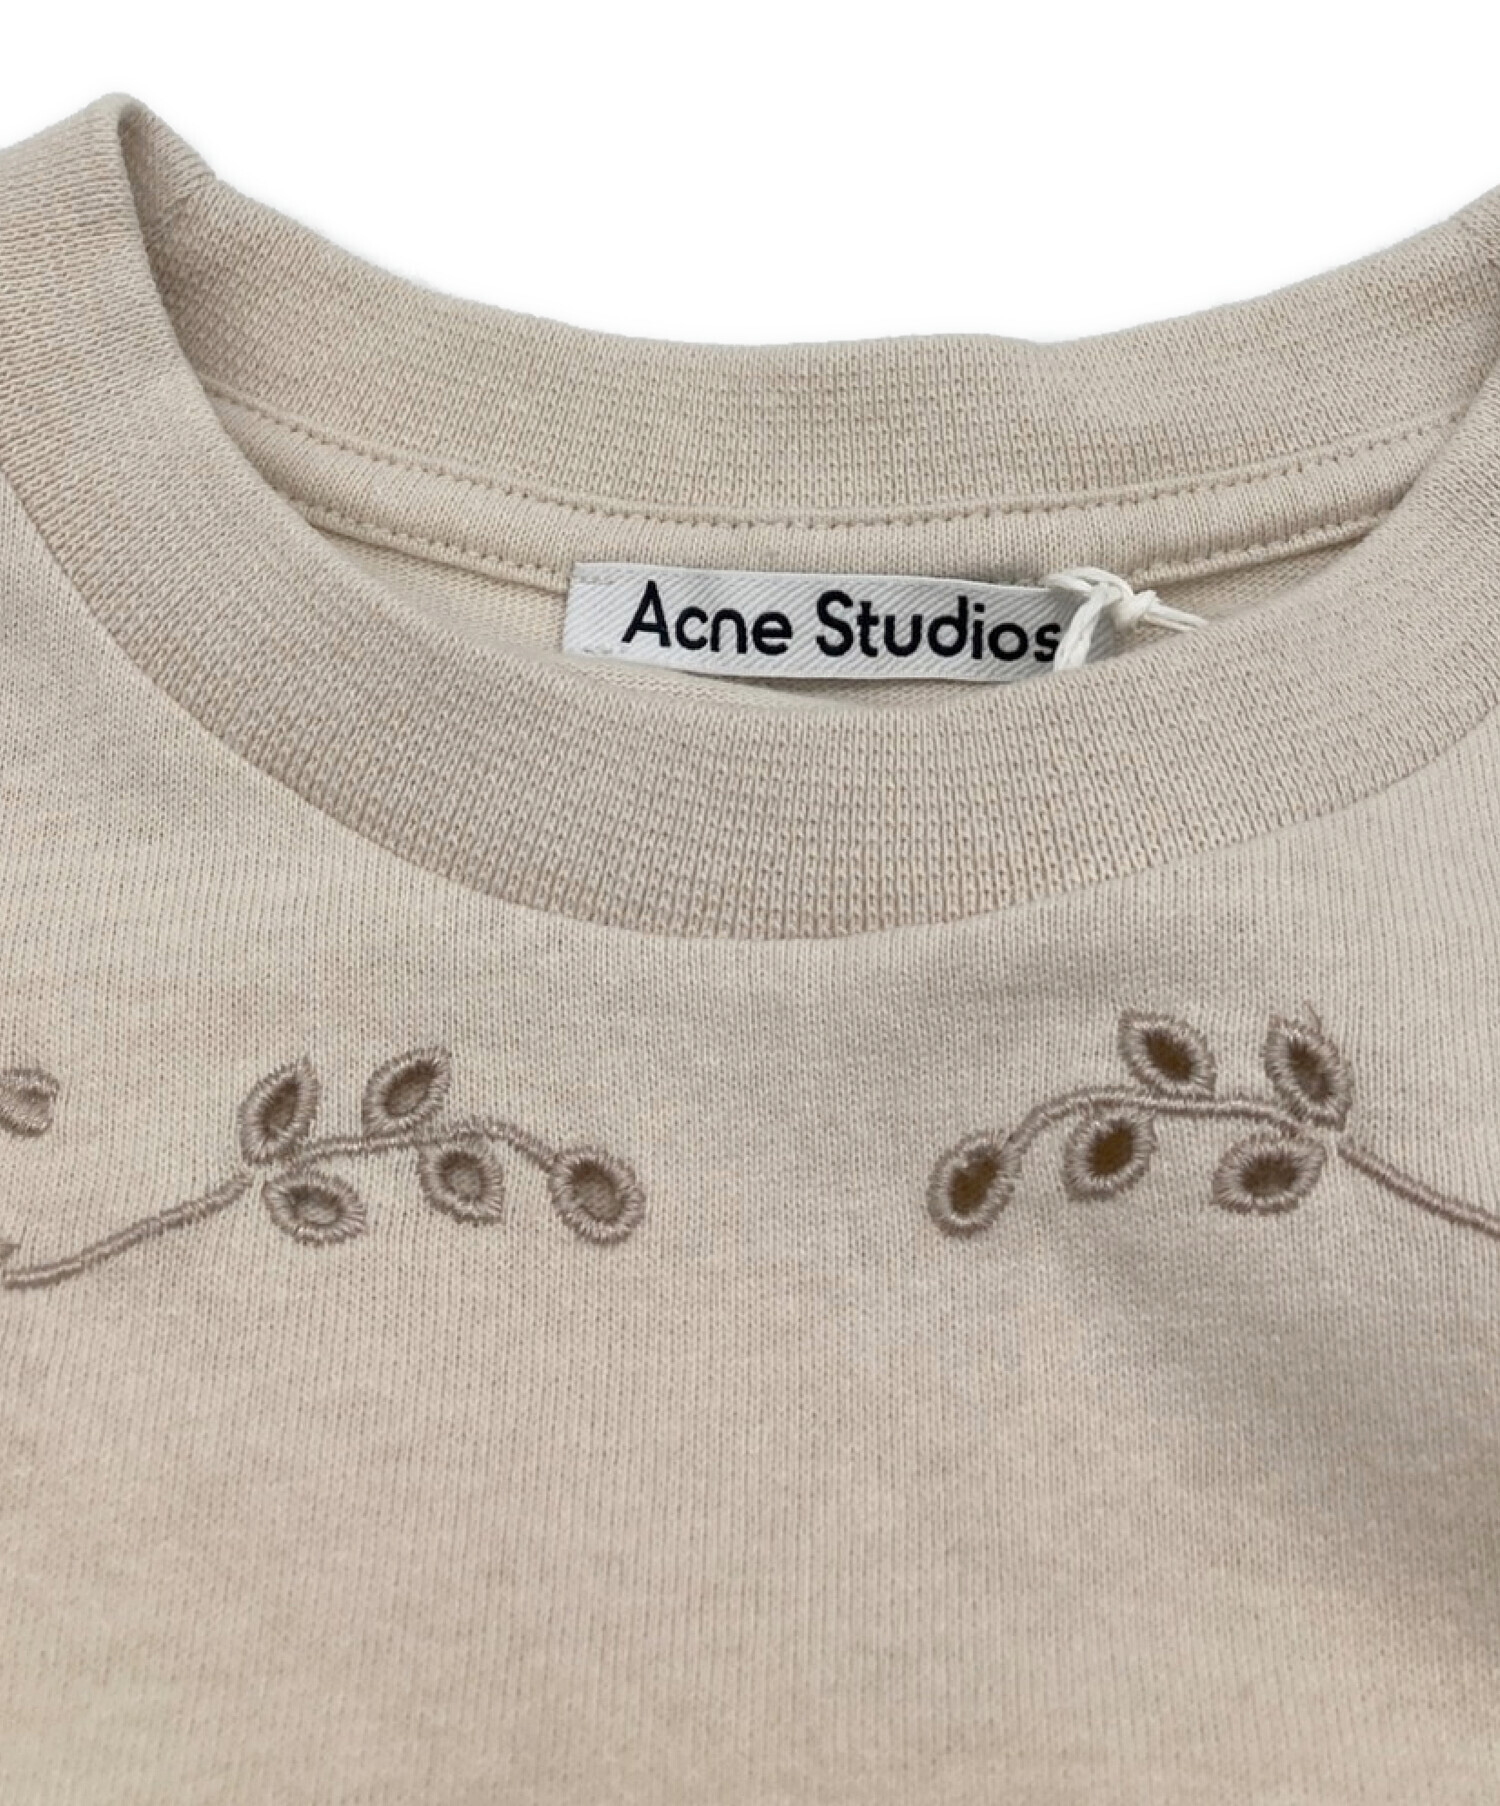 ACNE STUDIOS (アクネストゥディオス) 刺繍付きスリーブレスTシャツ ベージュ サイズ:S